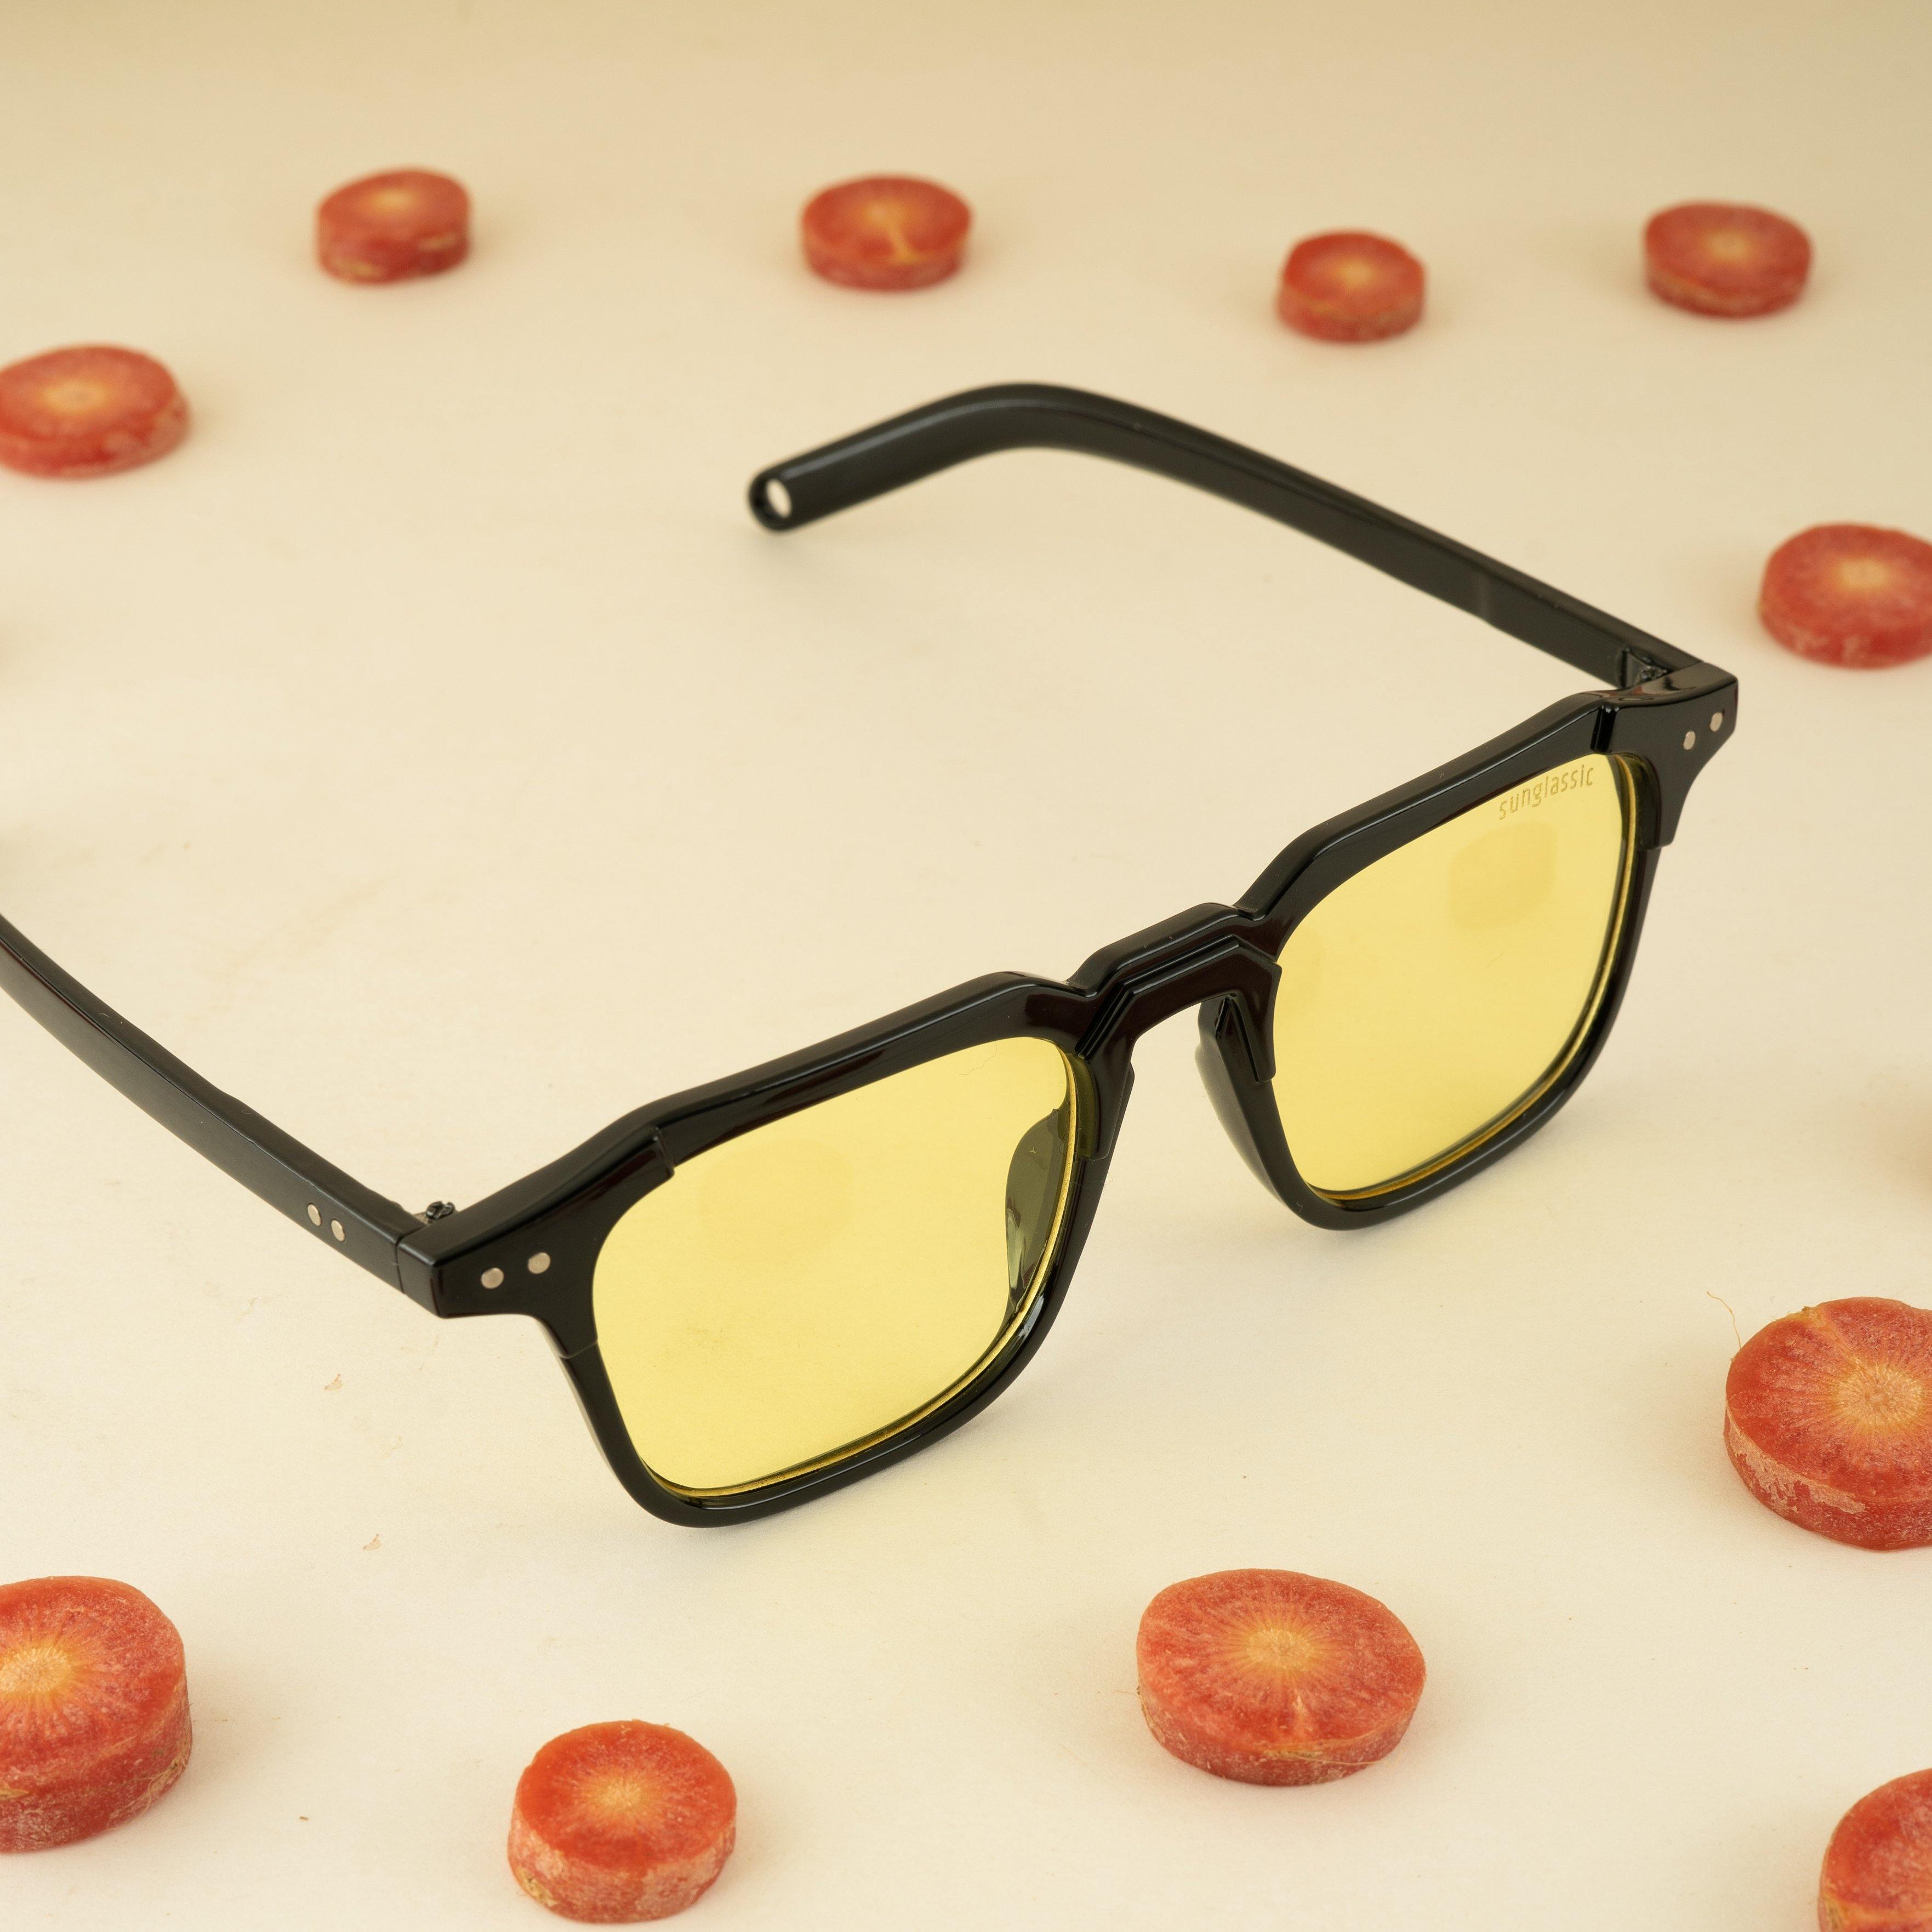 Kingsman Black Yellow Square Sunglasses